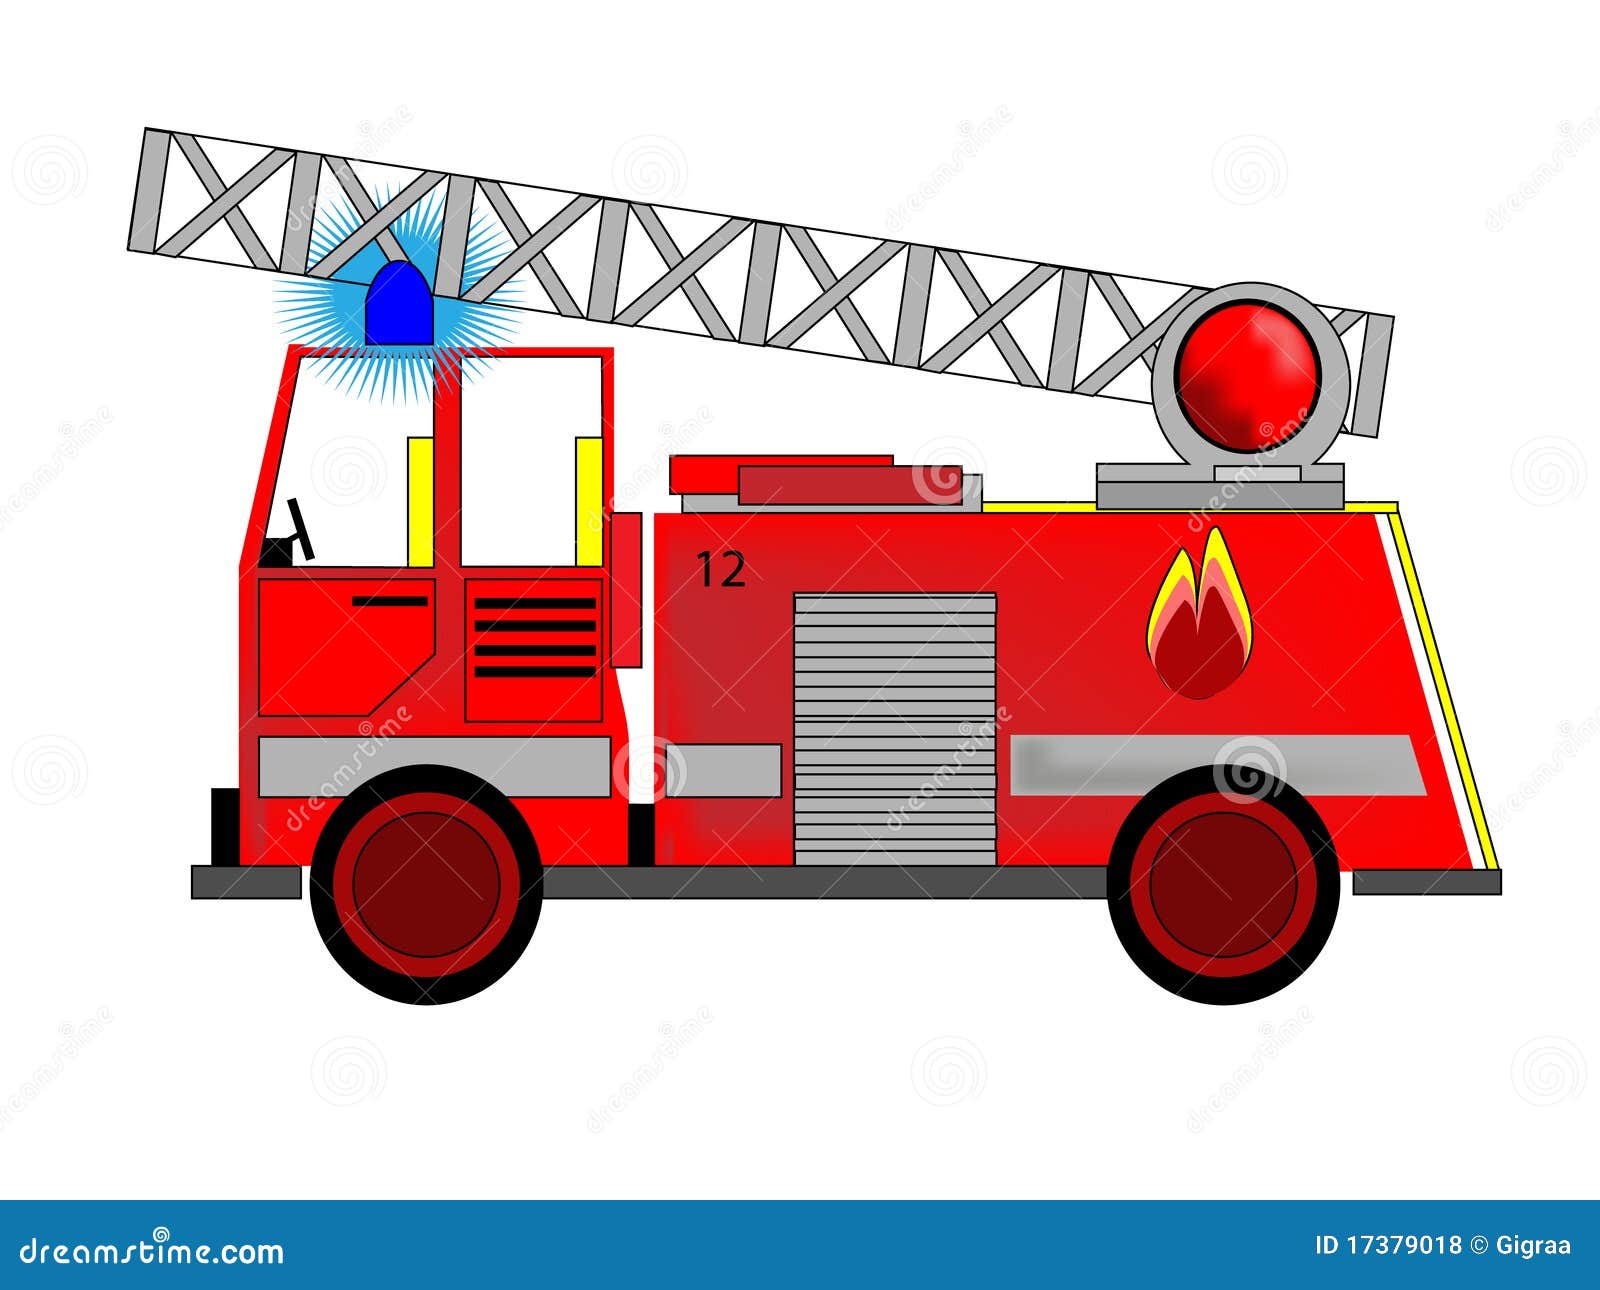 fire engine clip art images - photo #24